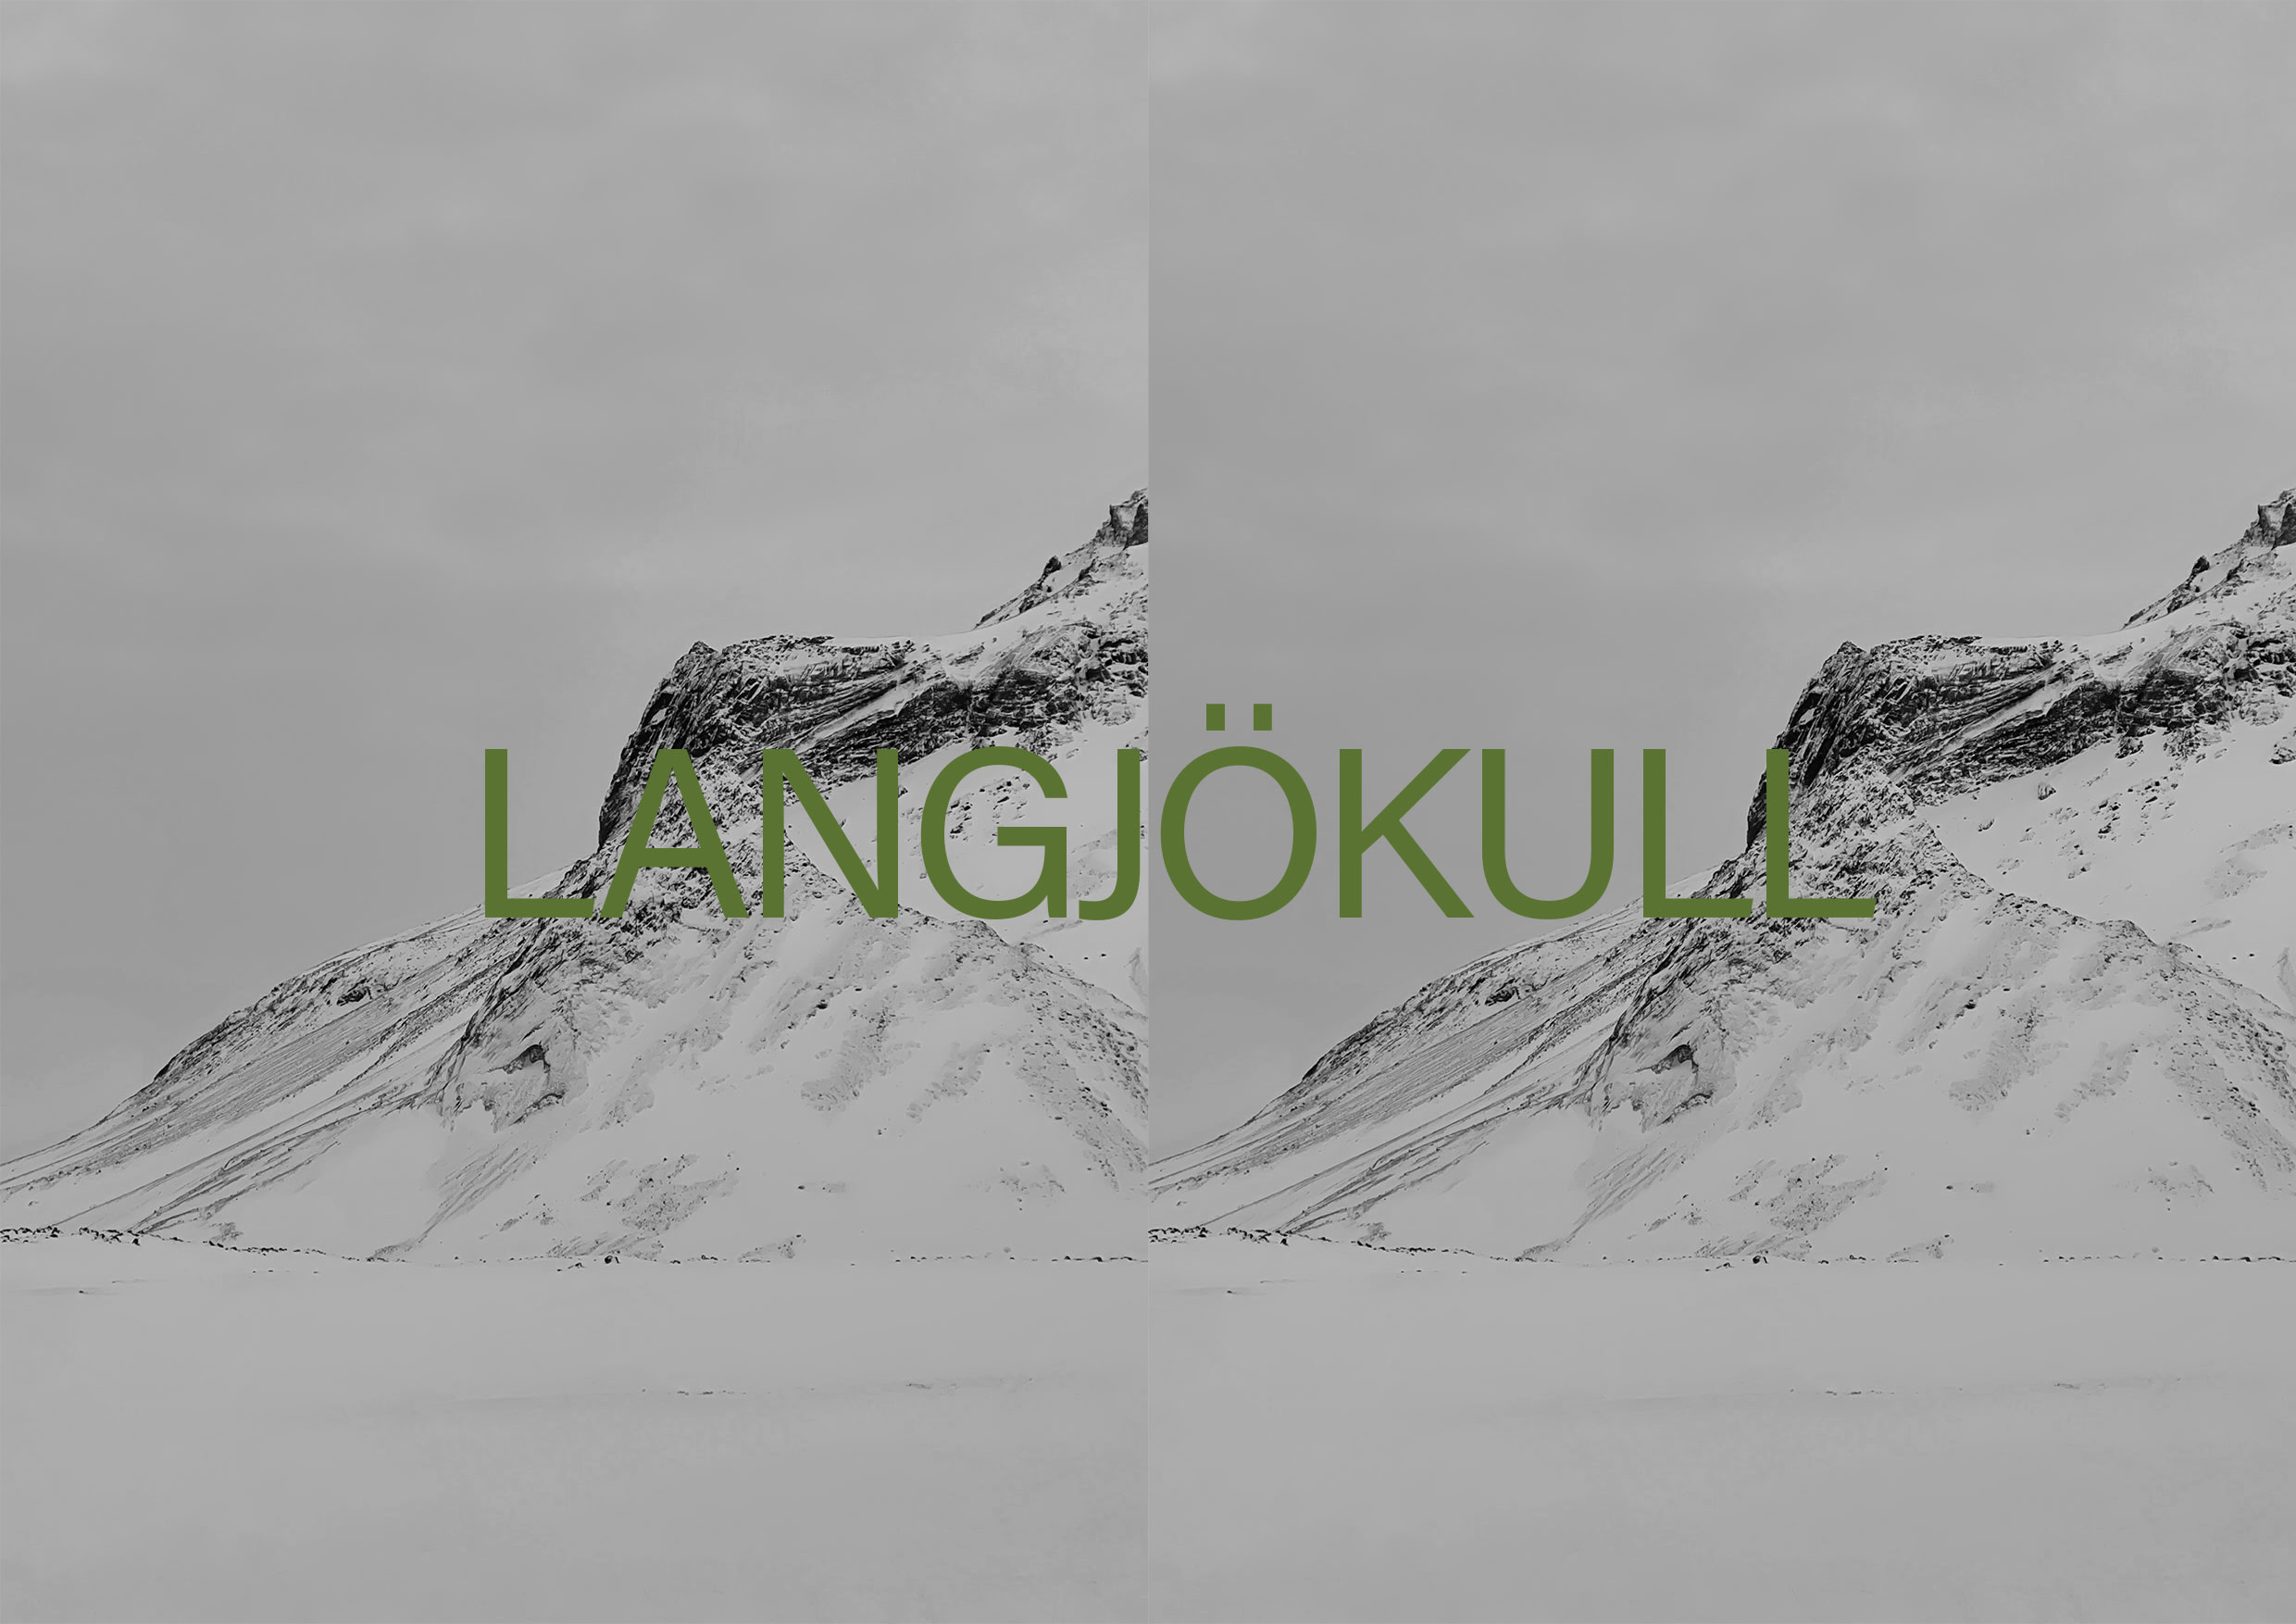 Langjökull